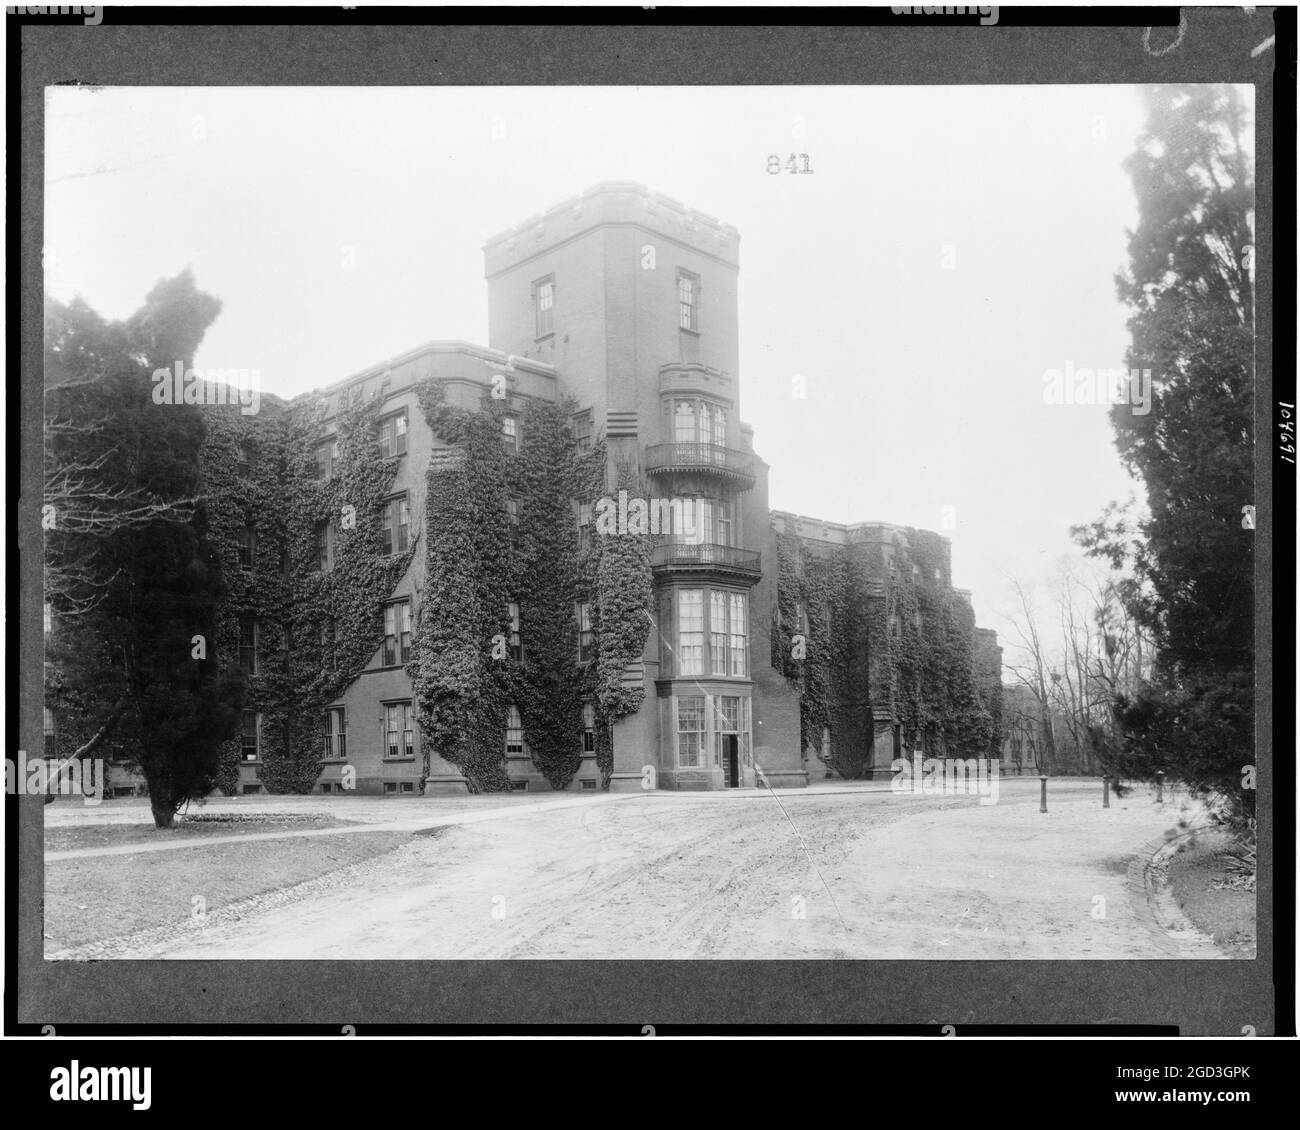 Edificio del Centro en el Hospital St. Elizabeths en Washington, D.C., este edificio es uno de los más antiguos del campus del hospital. Suroeste, Washington, Distrito de Columbia ca. 1909 a 1932 Foto de stock